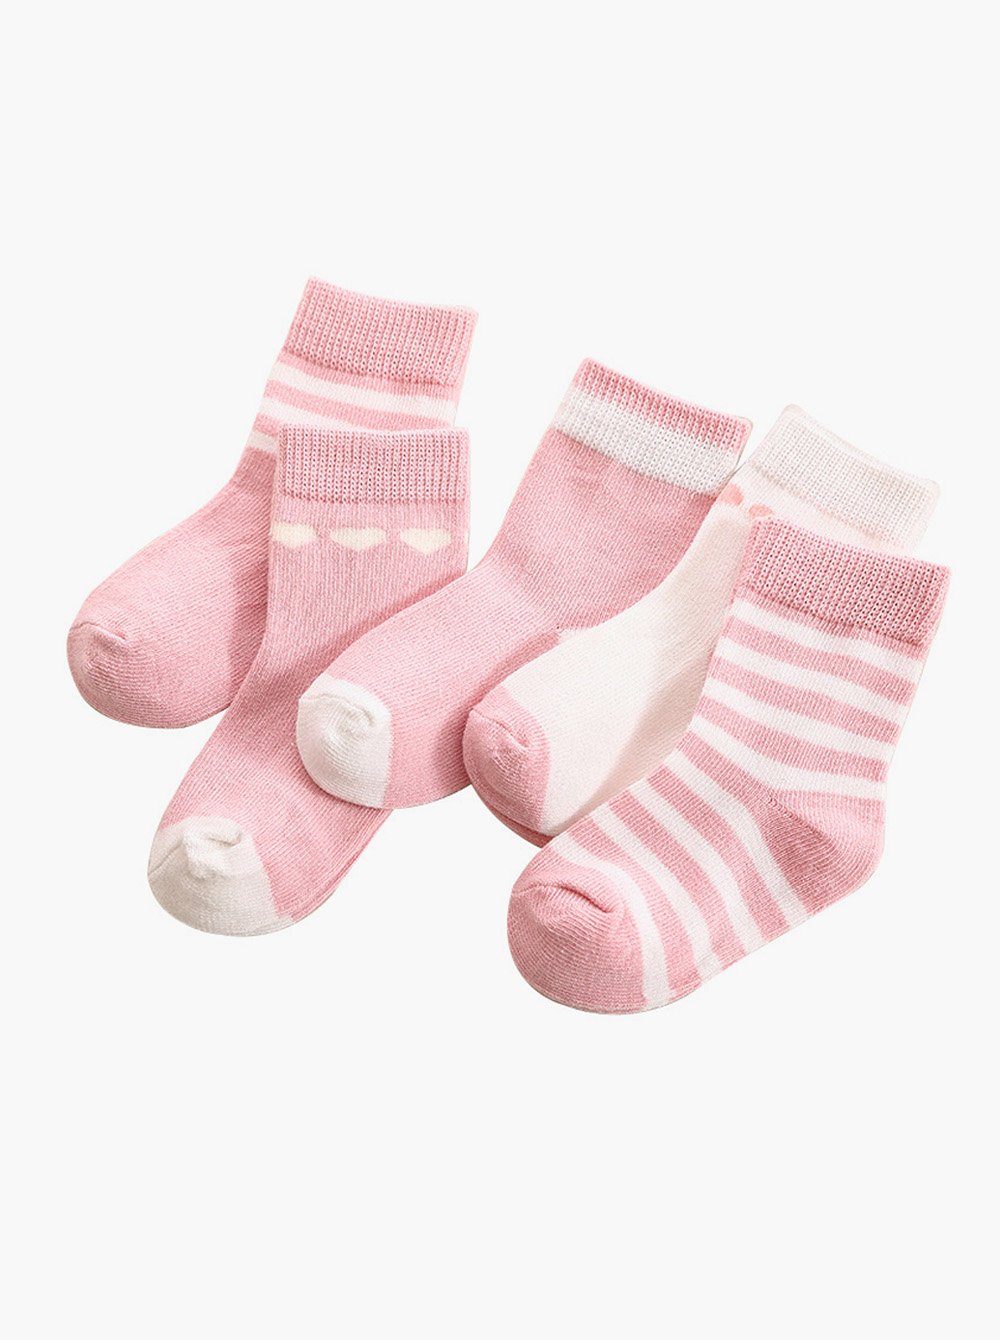 axy Langsocken axy Kinder Socken 5 Paar Multipack Jungen Mädchen Kindersocken (5er Pack) Geschenke Bunte Weich Kindersocken Pink